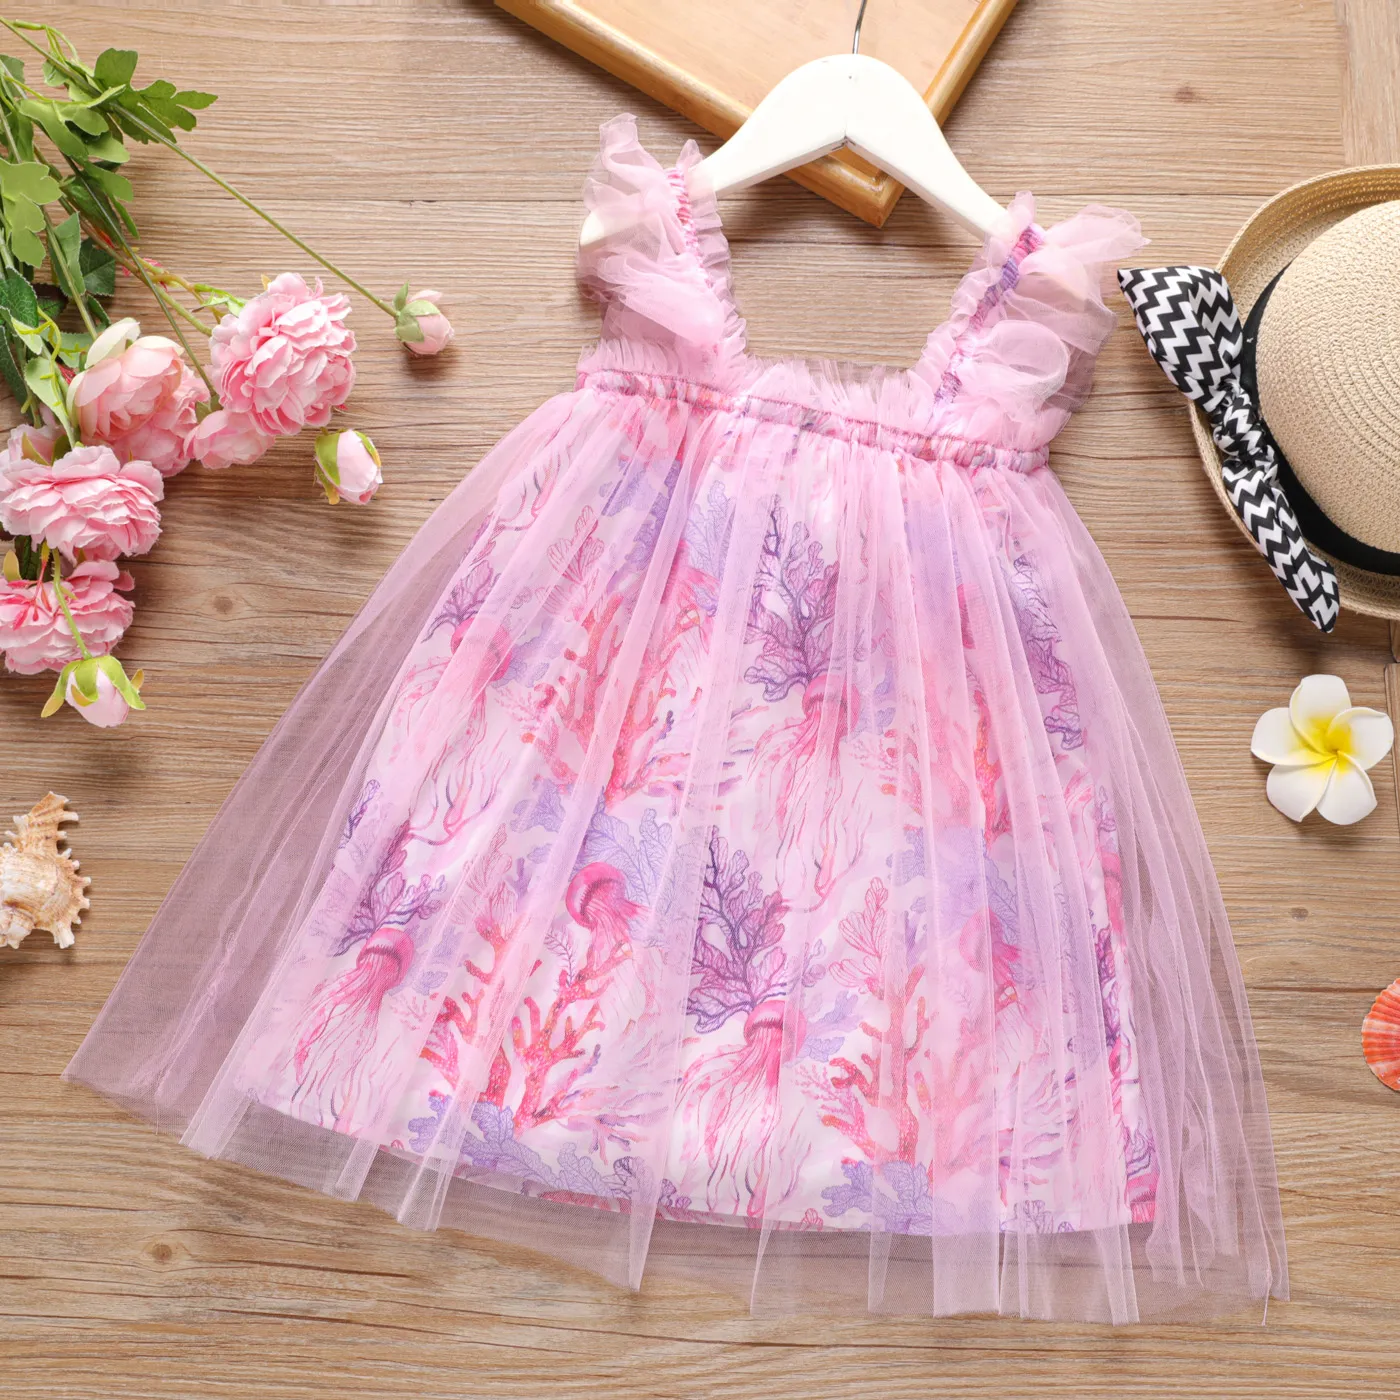 Toddler Girl Allover Floral Print Slip Overlay Dress